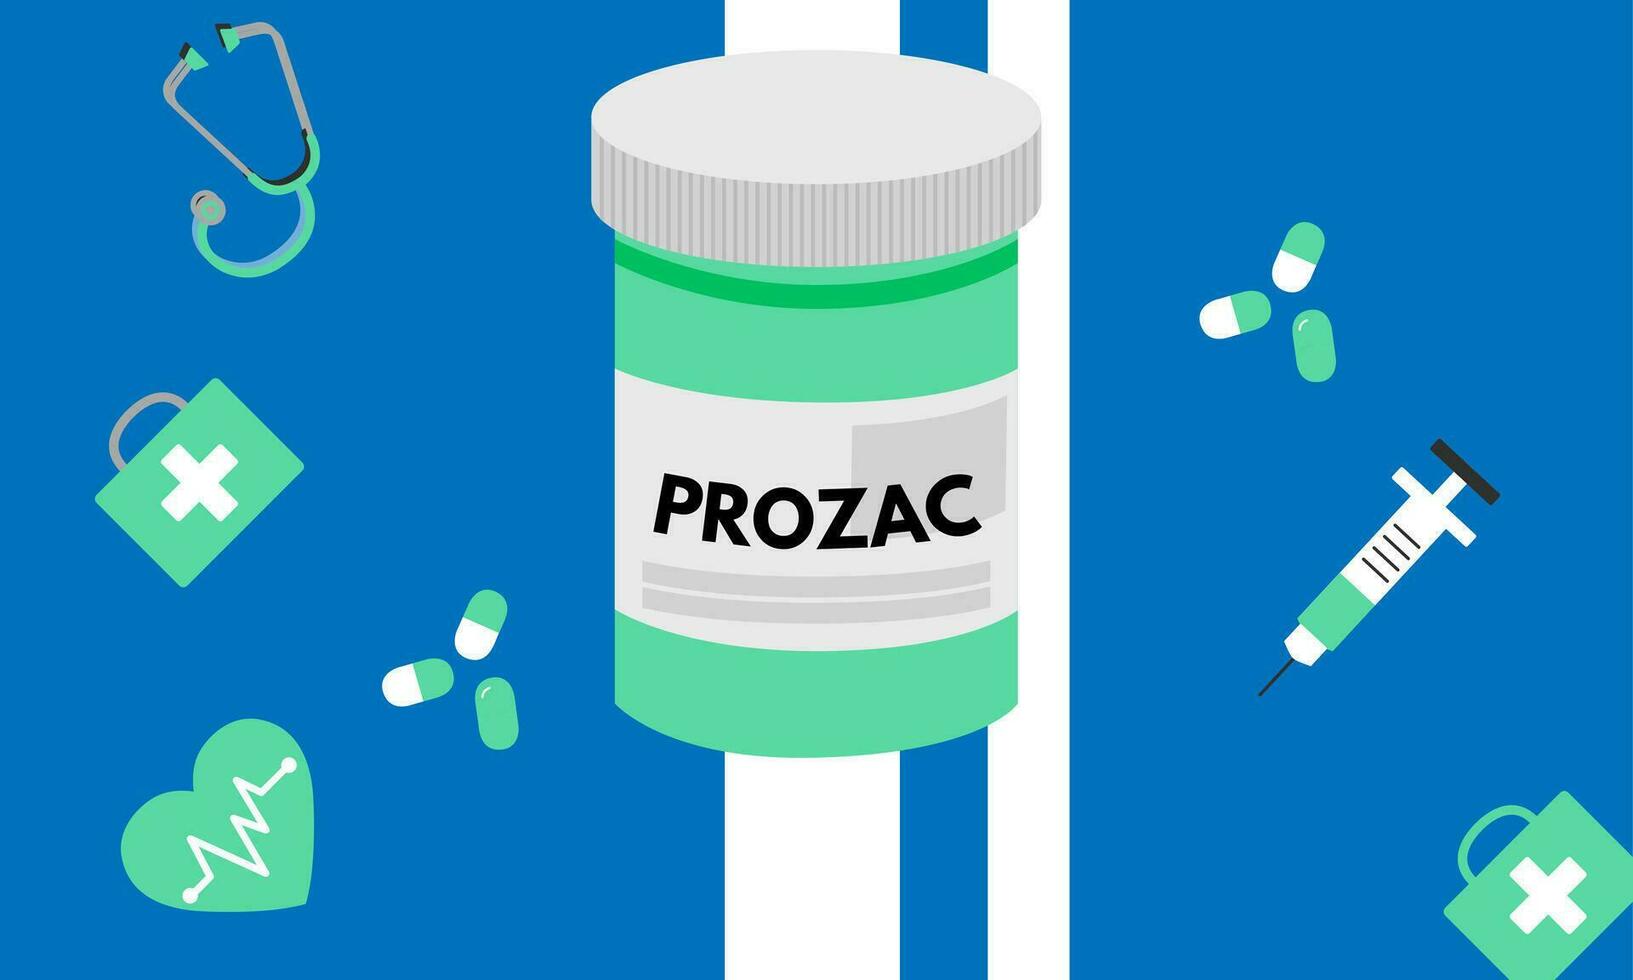 Prozac Medical pills in RX prescription drug bottle for mental health vector illustration